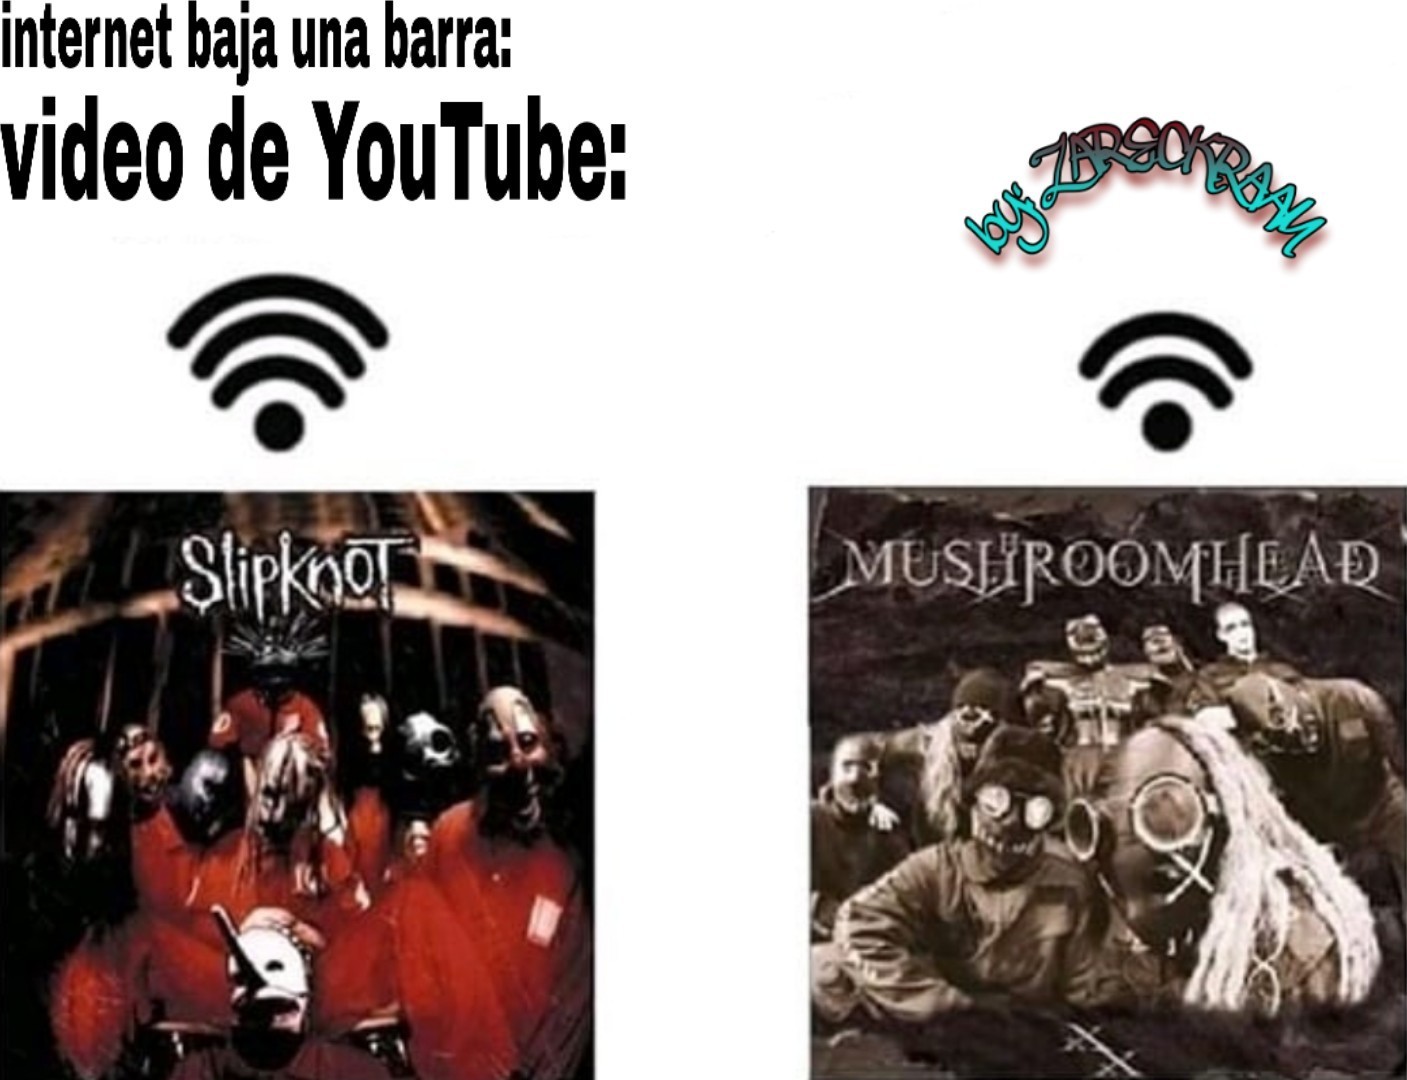 Viva slipknot - meme